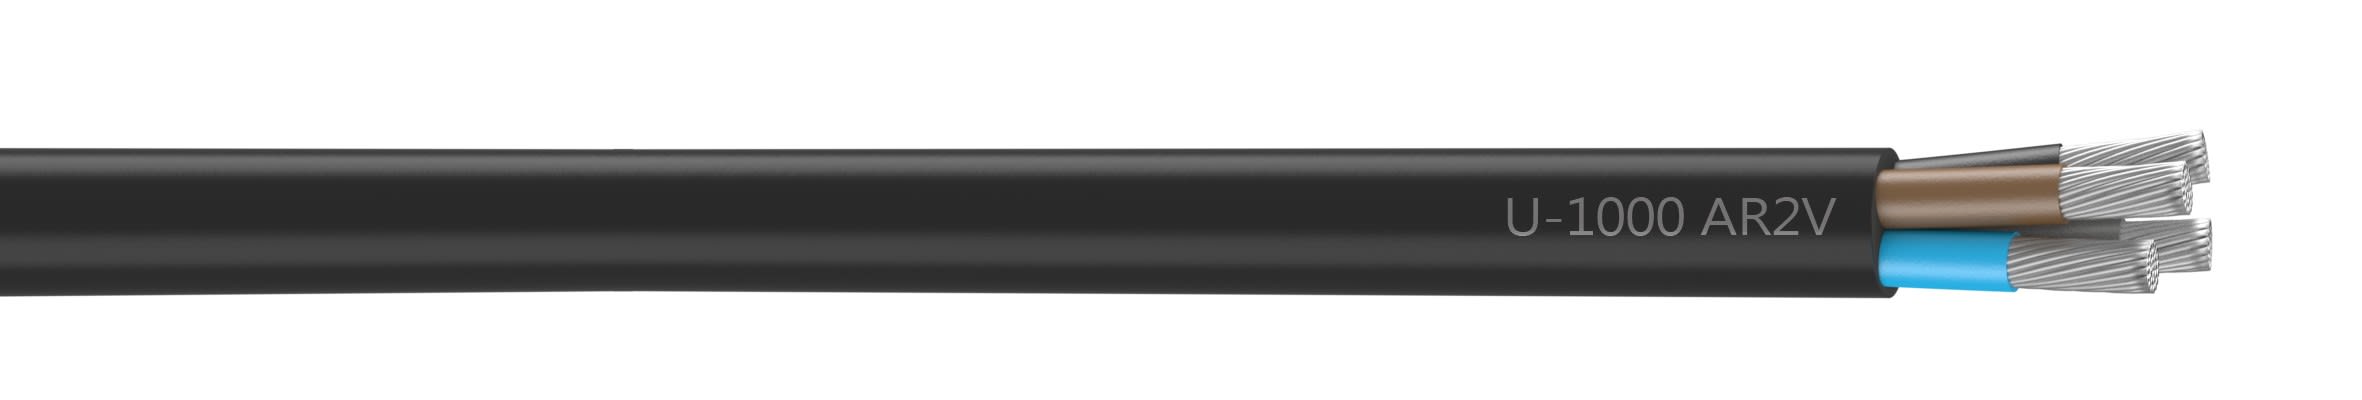 Nexans - Cable rigide U-1000 AR2V aluminium 4x50 longueur a la coupe